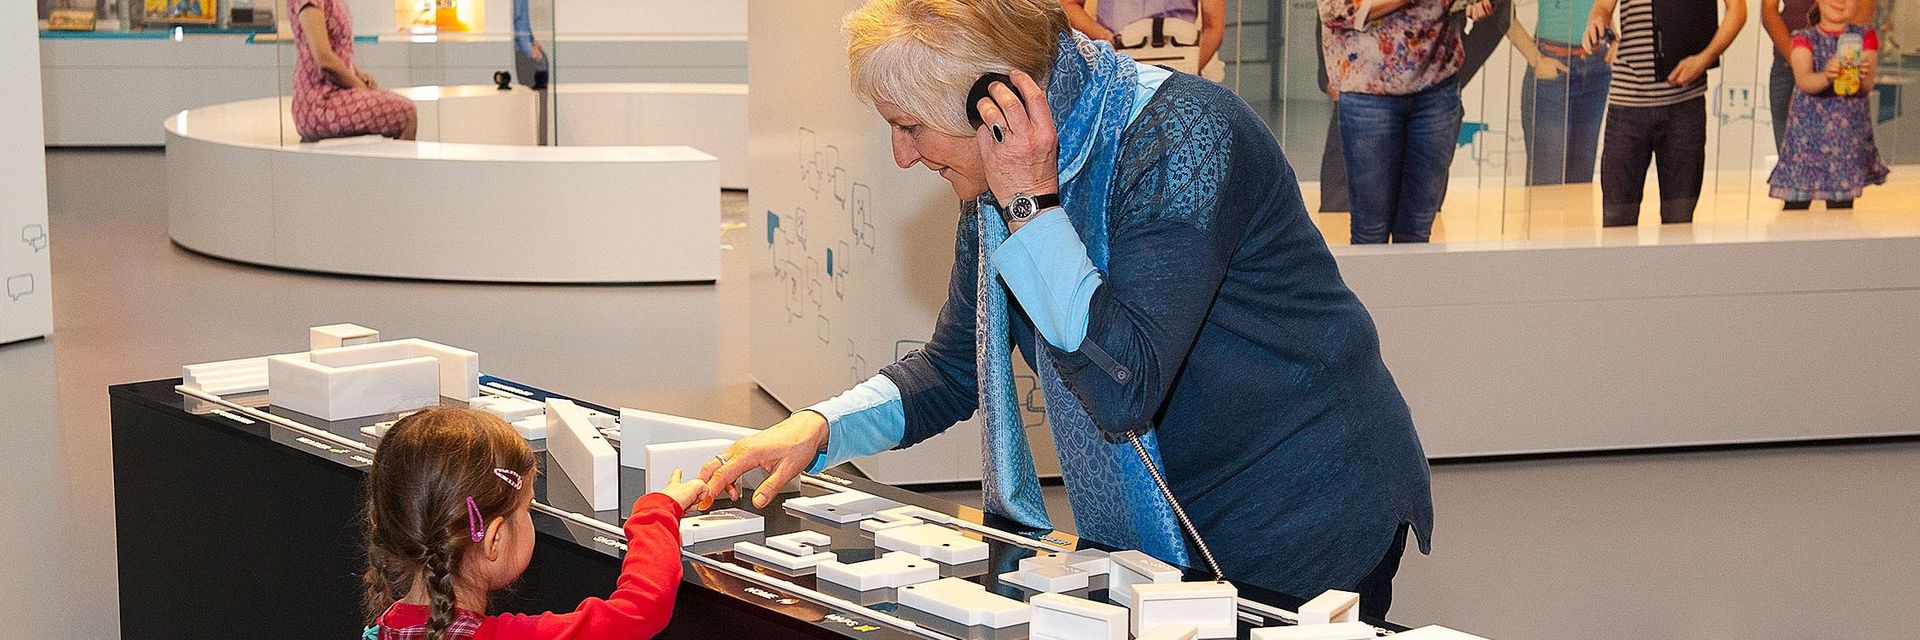 Eine ältere Frau und ein Kind stehen sich an einem Ausstellungstisch gegenüber. Auf dem Tisch befindet sich ein Übersichtsplan der Ausstellung zum Tasten. Die Frau hält sich den Hörer einer Hörstation ans Ohr. Gemeinsam tasten die beiden auf dem Plan.